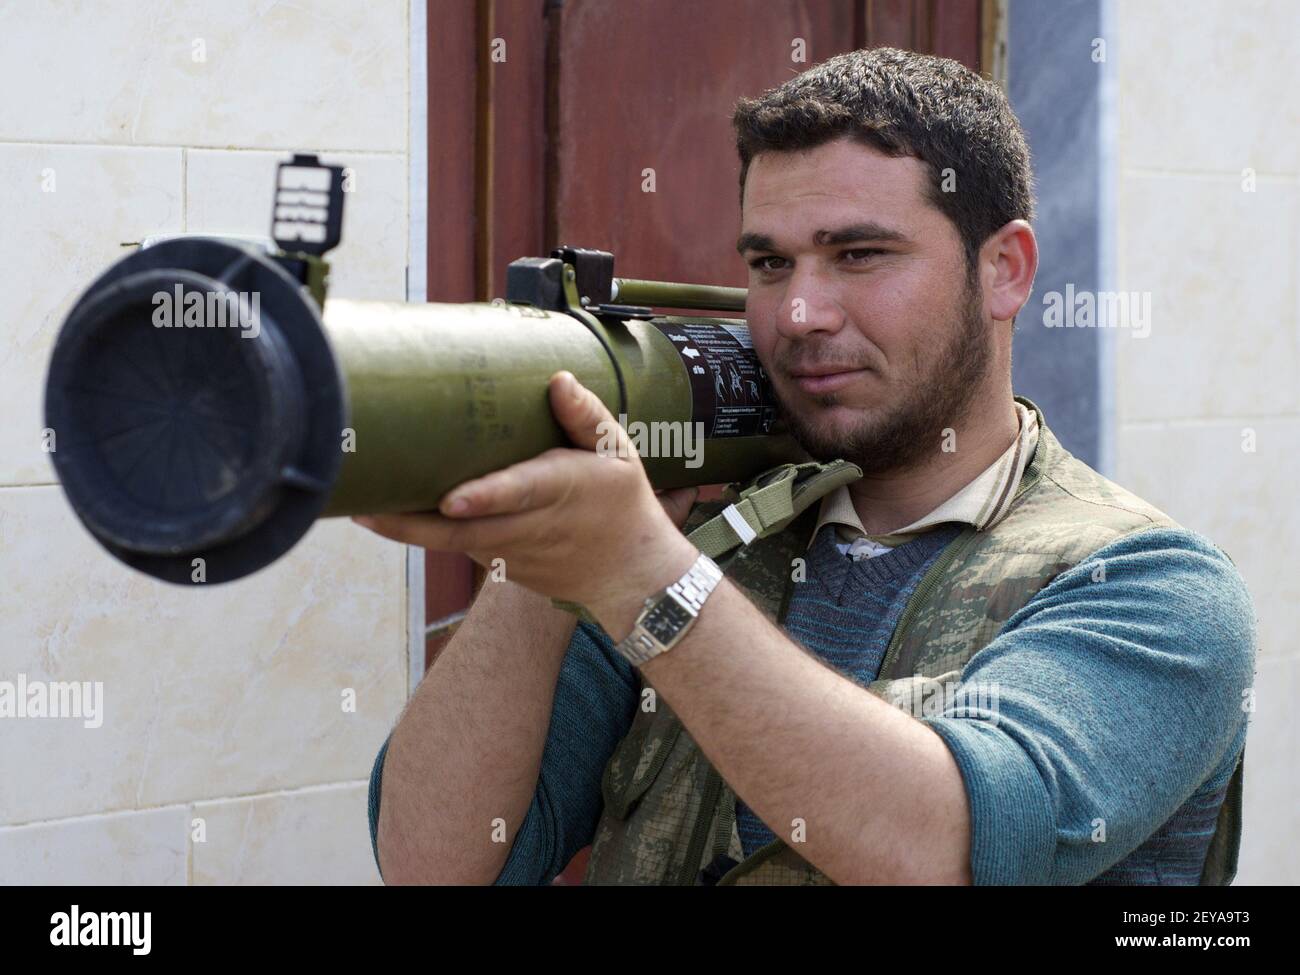 27 febbraio 2013 - Kfar Nbouda, - un membro della Brigata Nasr, un gruppo ribelle siriano, ispeziona un lanciagranate propulse a razzo appena arrivato a Kfar Nbouda, Siria, 27 febbraio 2013. Foto di credito: David Enders/MCT/Sipa USA Foto Stock